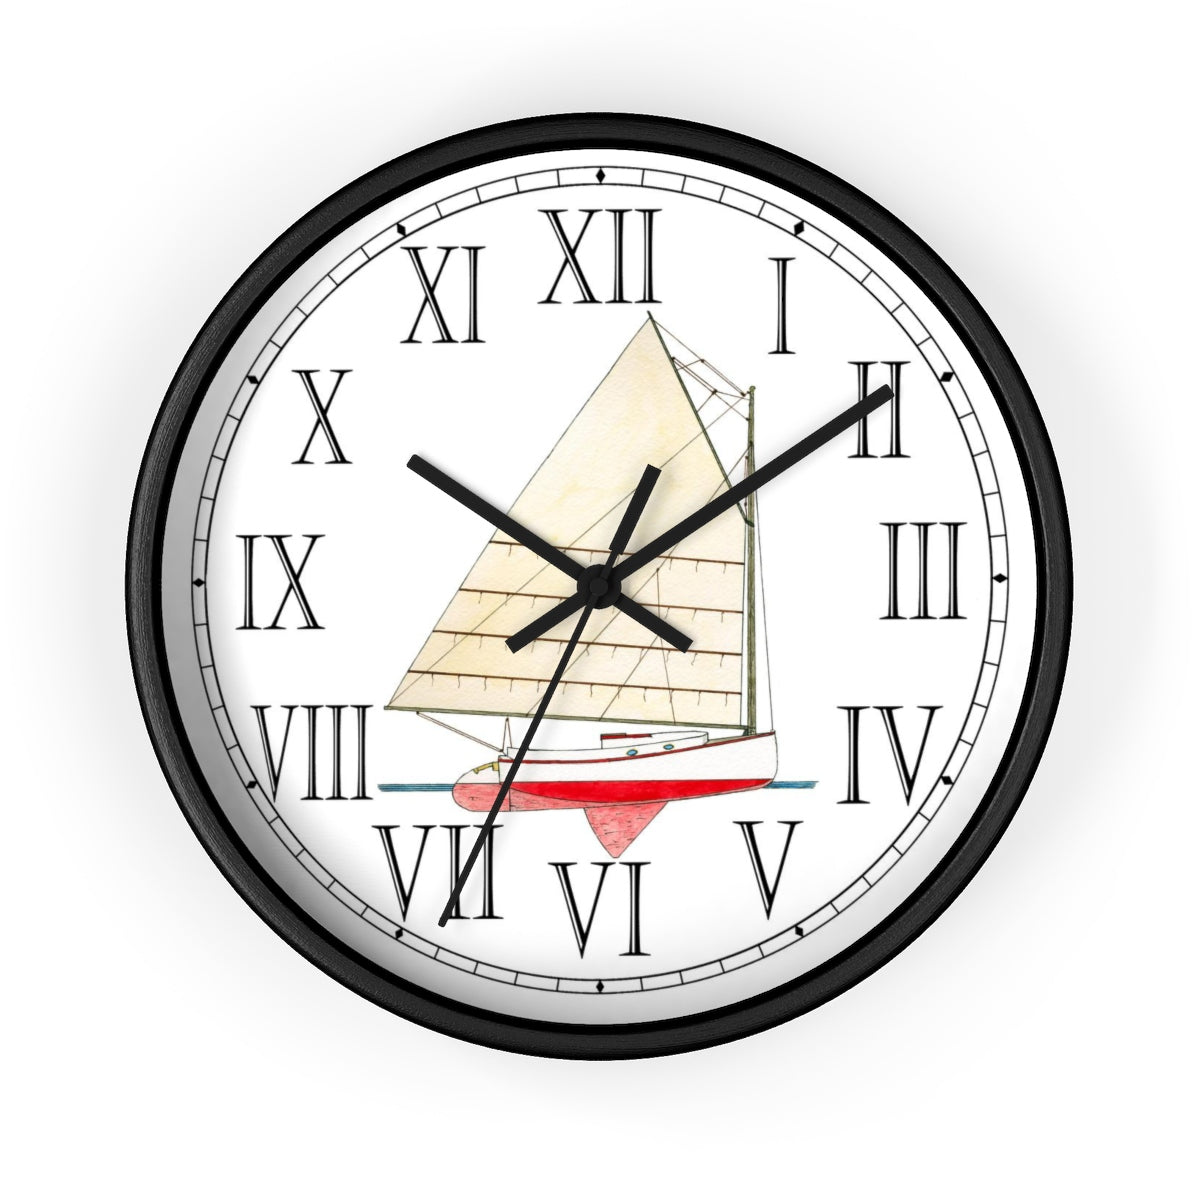 Sea Hound Roman Numeral Clock